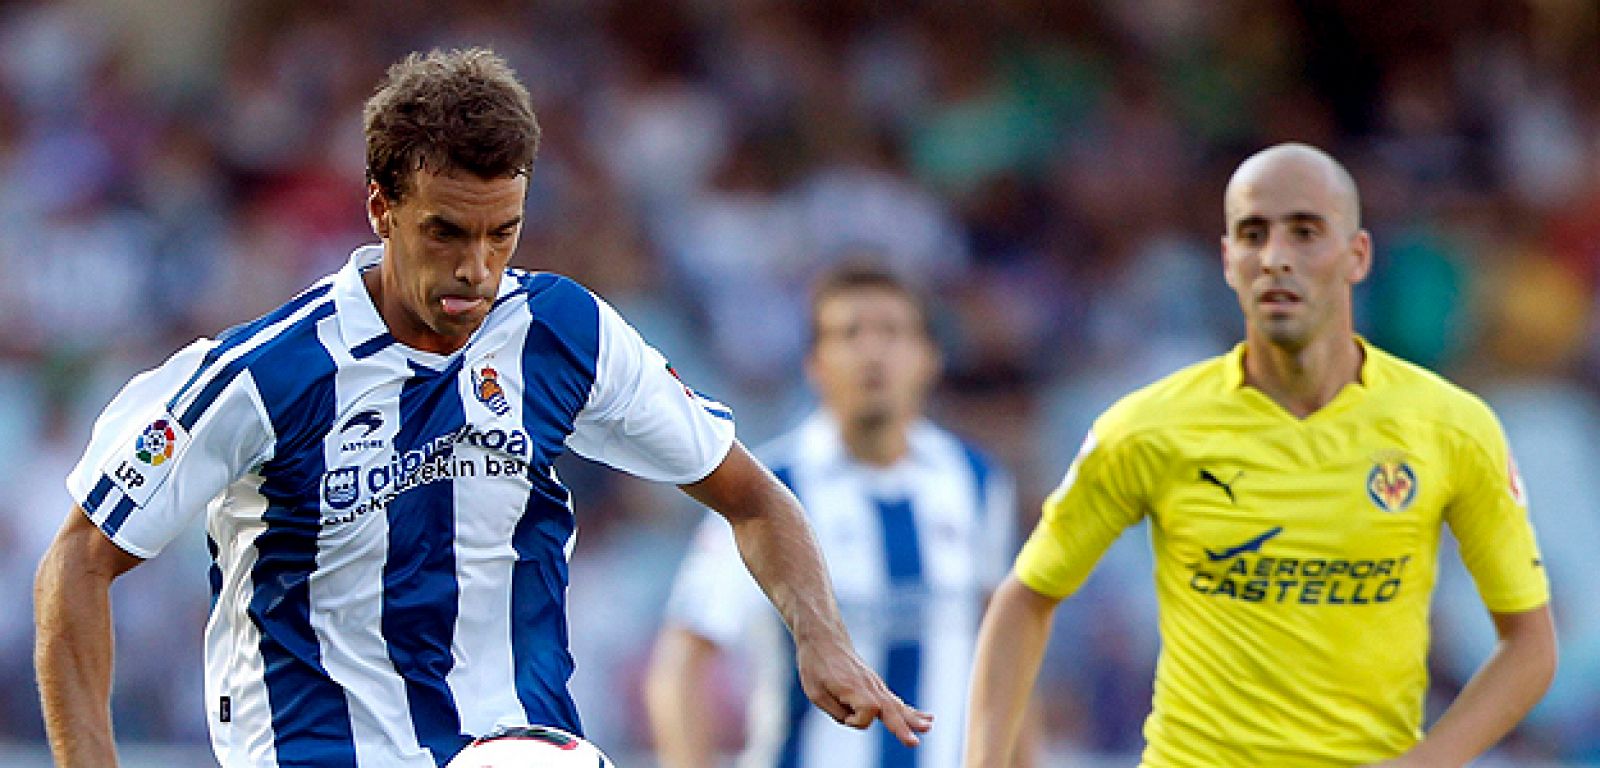 El centrocampista de la Real Sociedad Xabi Prieto controla el balón ante el centrocampista del Villarreal CF Borja Valero. La Real Sociedad venció por 1-0 al Villarreal CF.